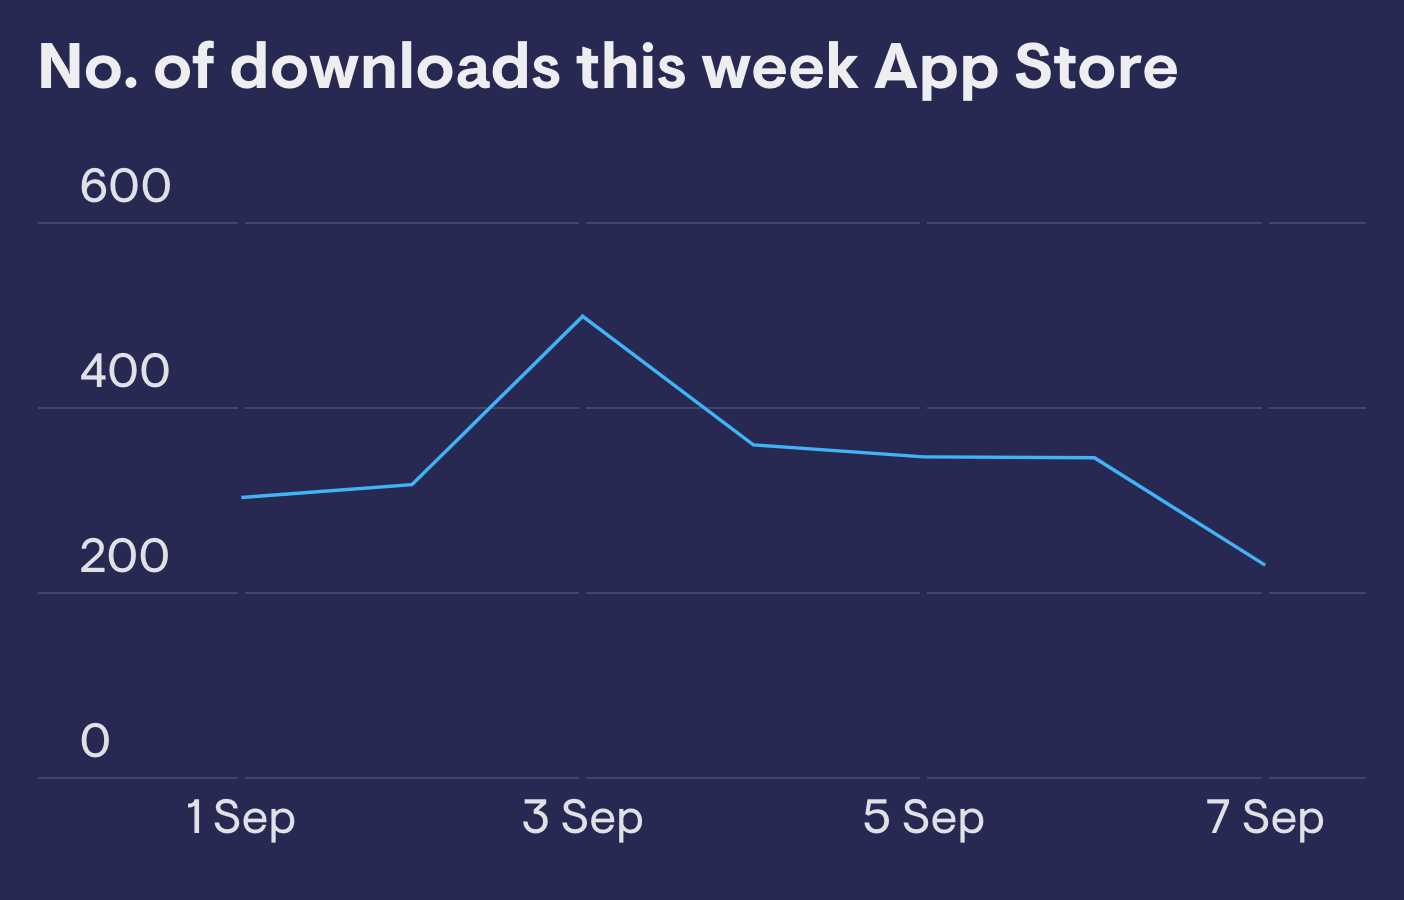 App store downloads